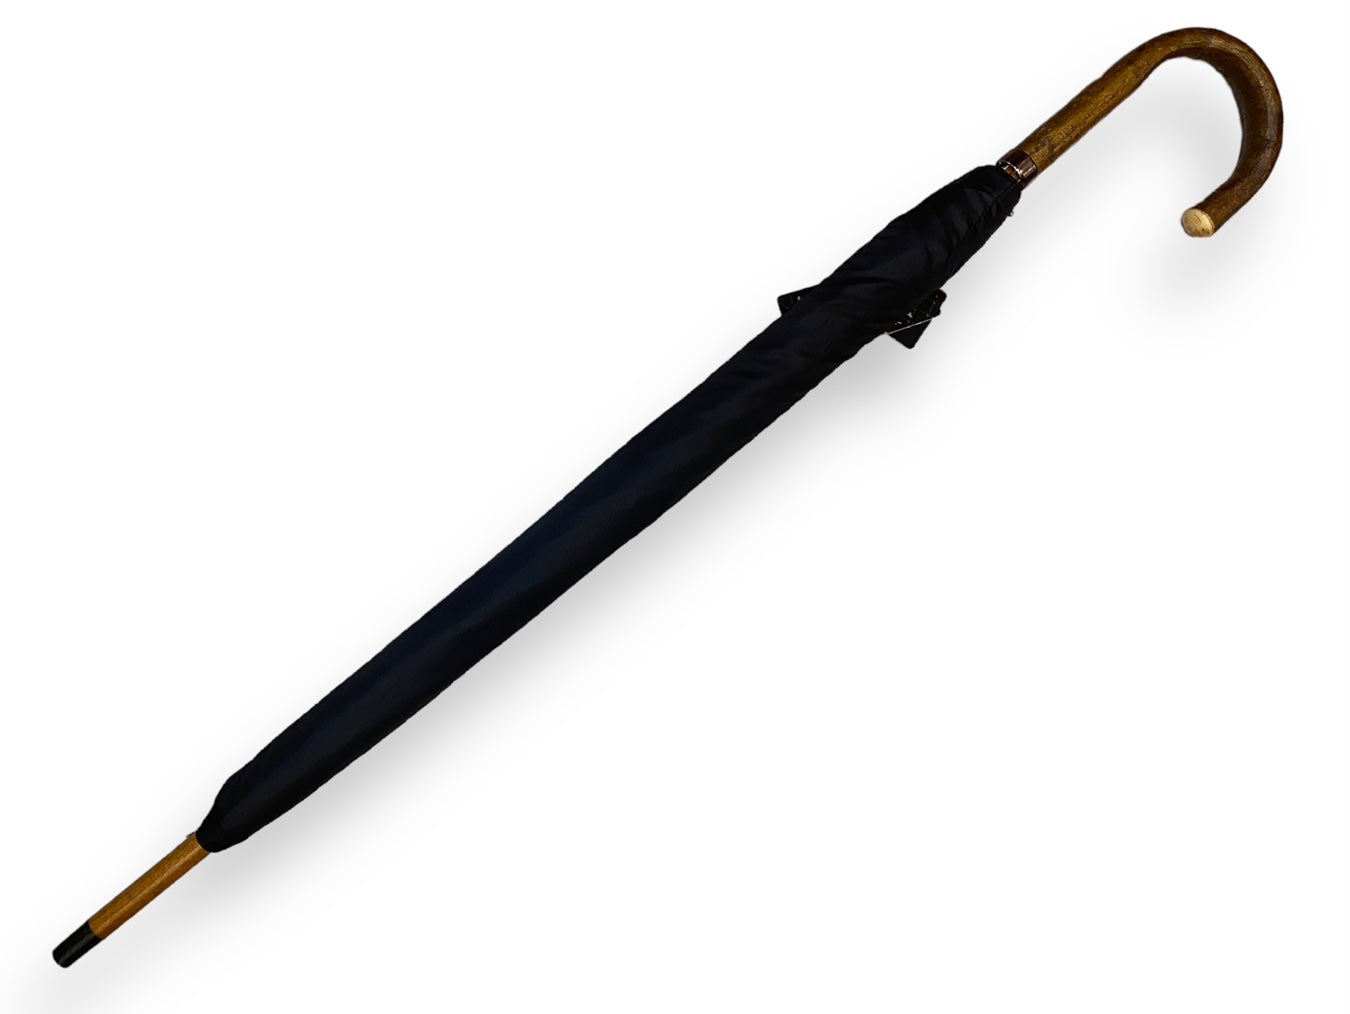 Ombrello Artigianale, manico in legno di Nocciolo 10 stecche - colore nero . Ombrelli Domizio dal 1989 Made in Italy